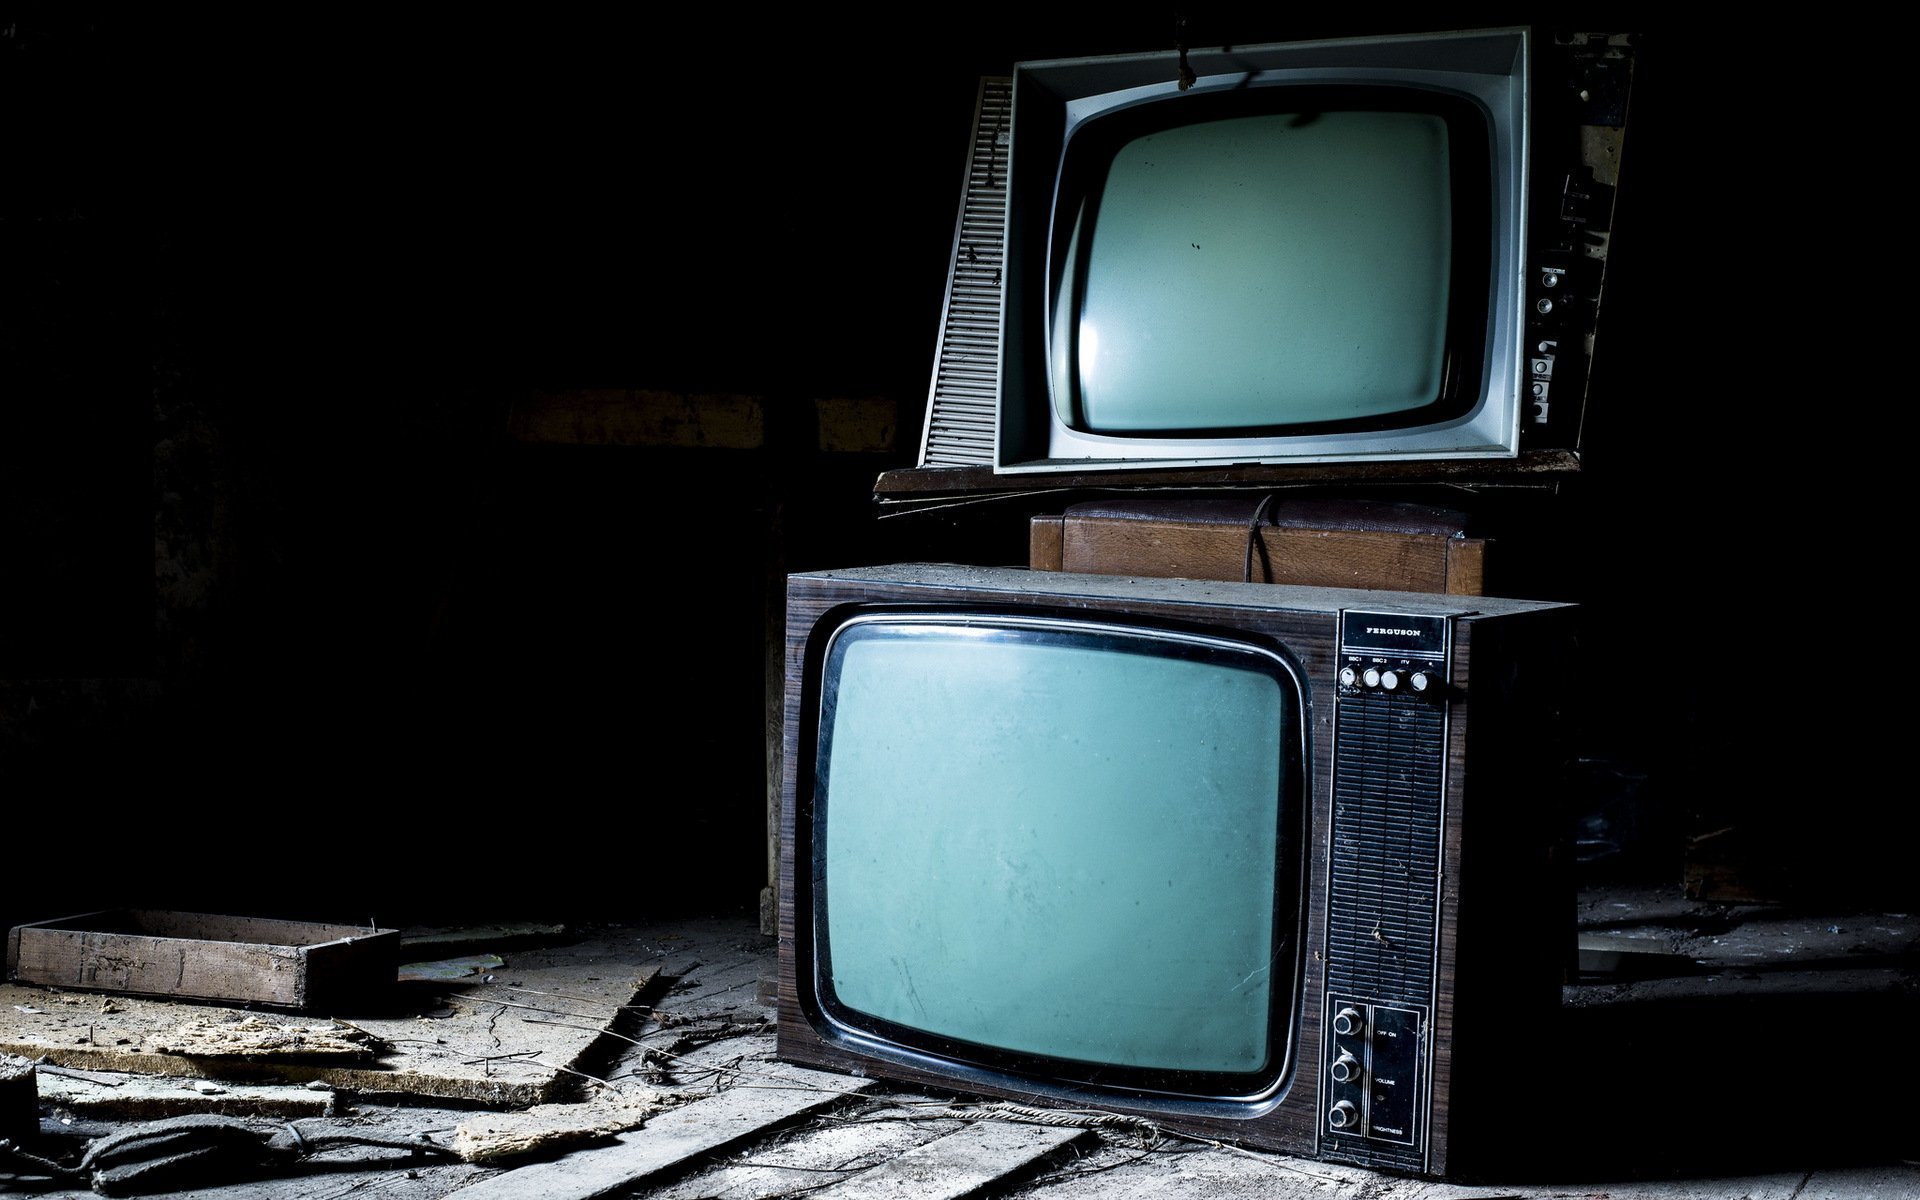 Кинопоиск на старом телевизоре. Старый телевизор. Старинный телевизор. Экран телевизора. Телевизор старенький.